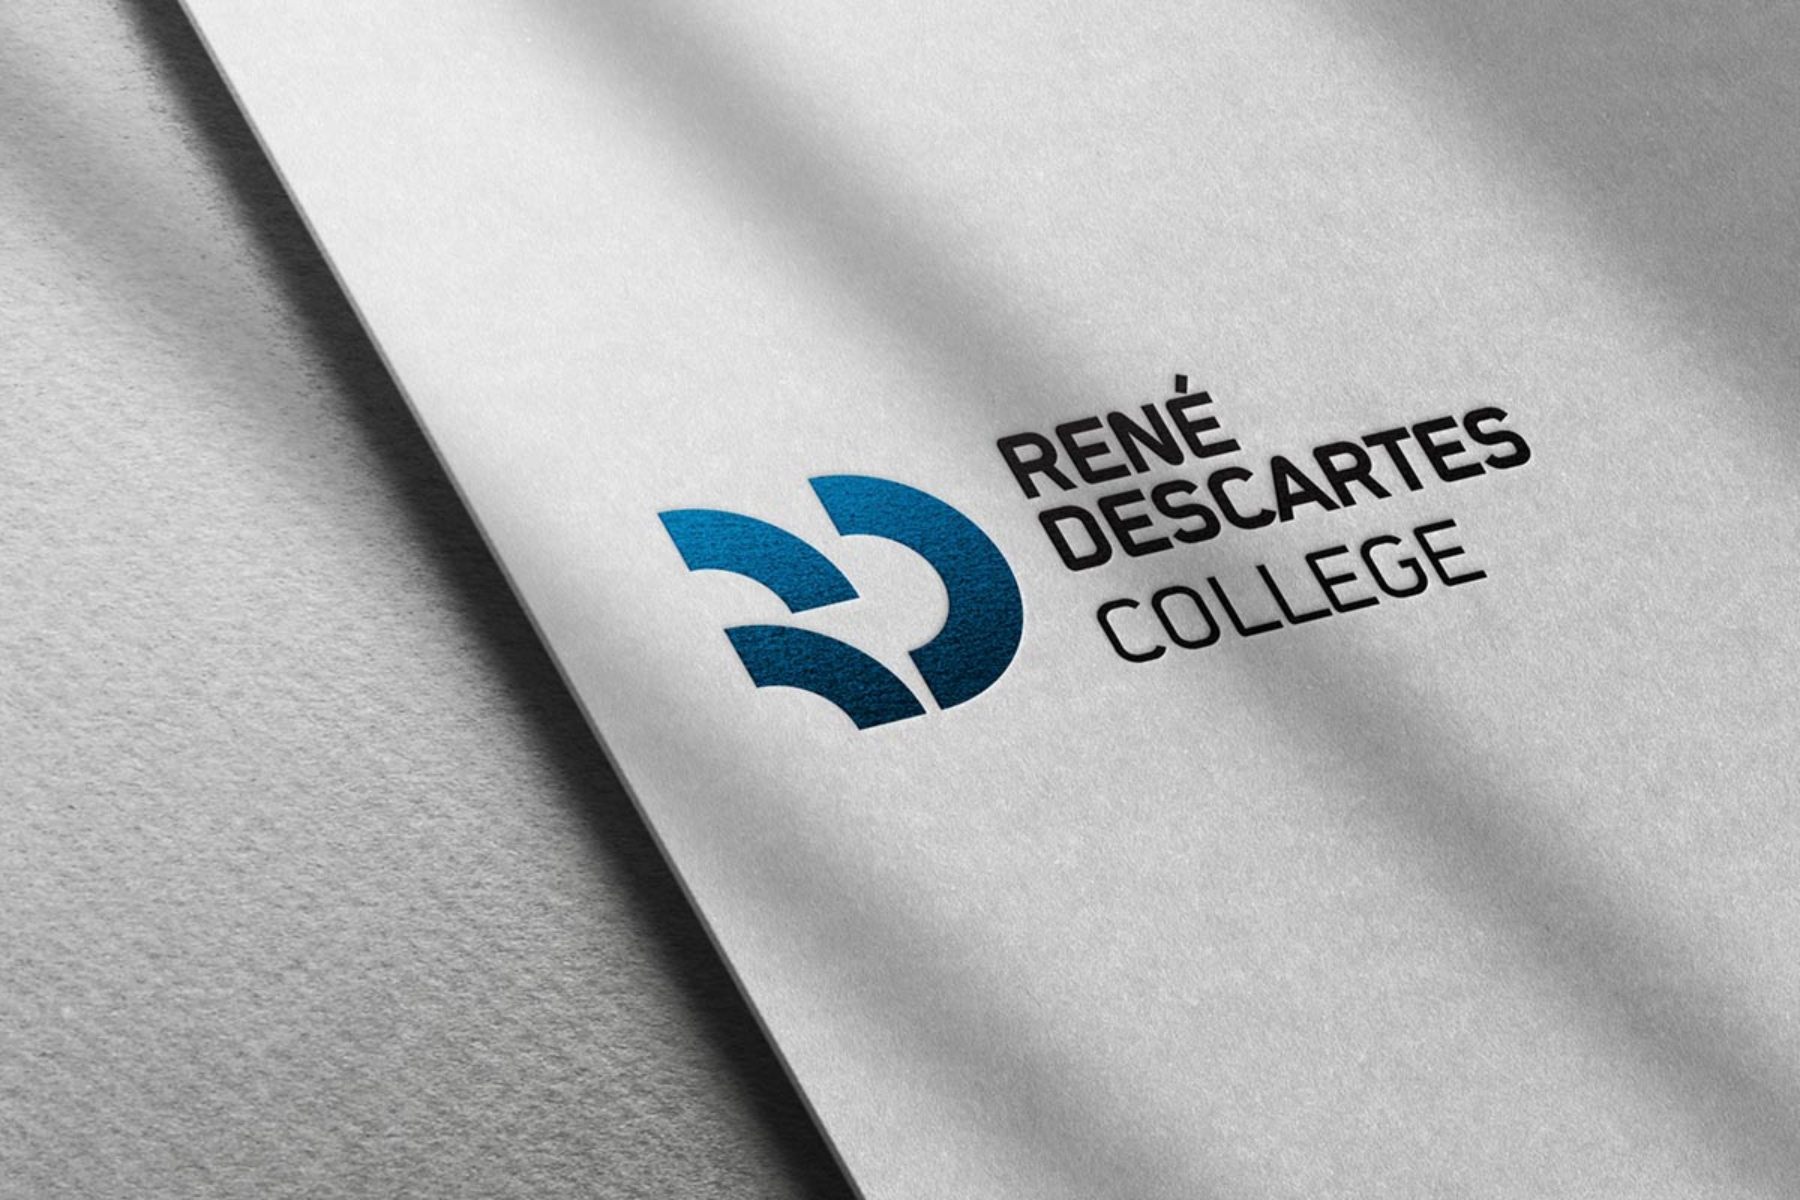 Συνέδριο Κολλεγίου René Descartes: Το Διαρκώς Μεταβαλλόμενο Πεδίο της Διοίκησης Υγειονομικής Περίθαλψης